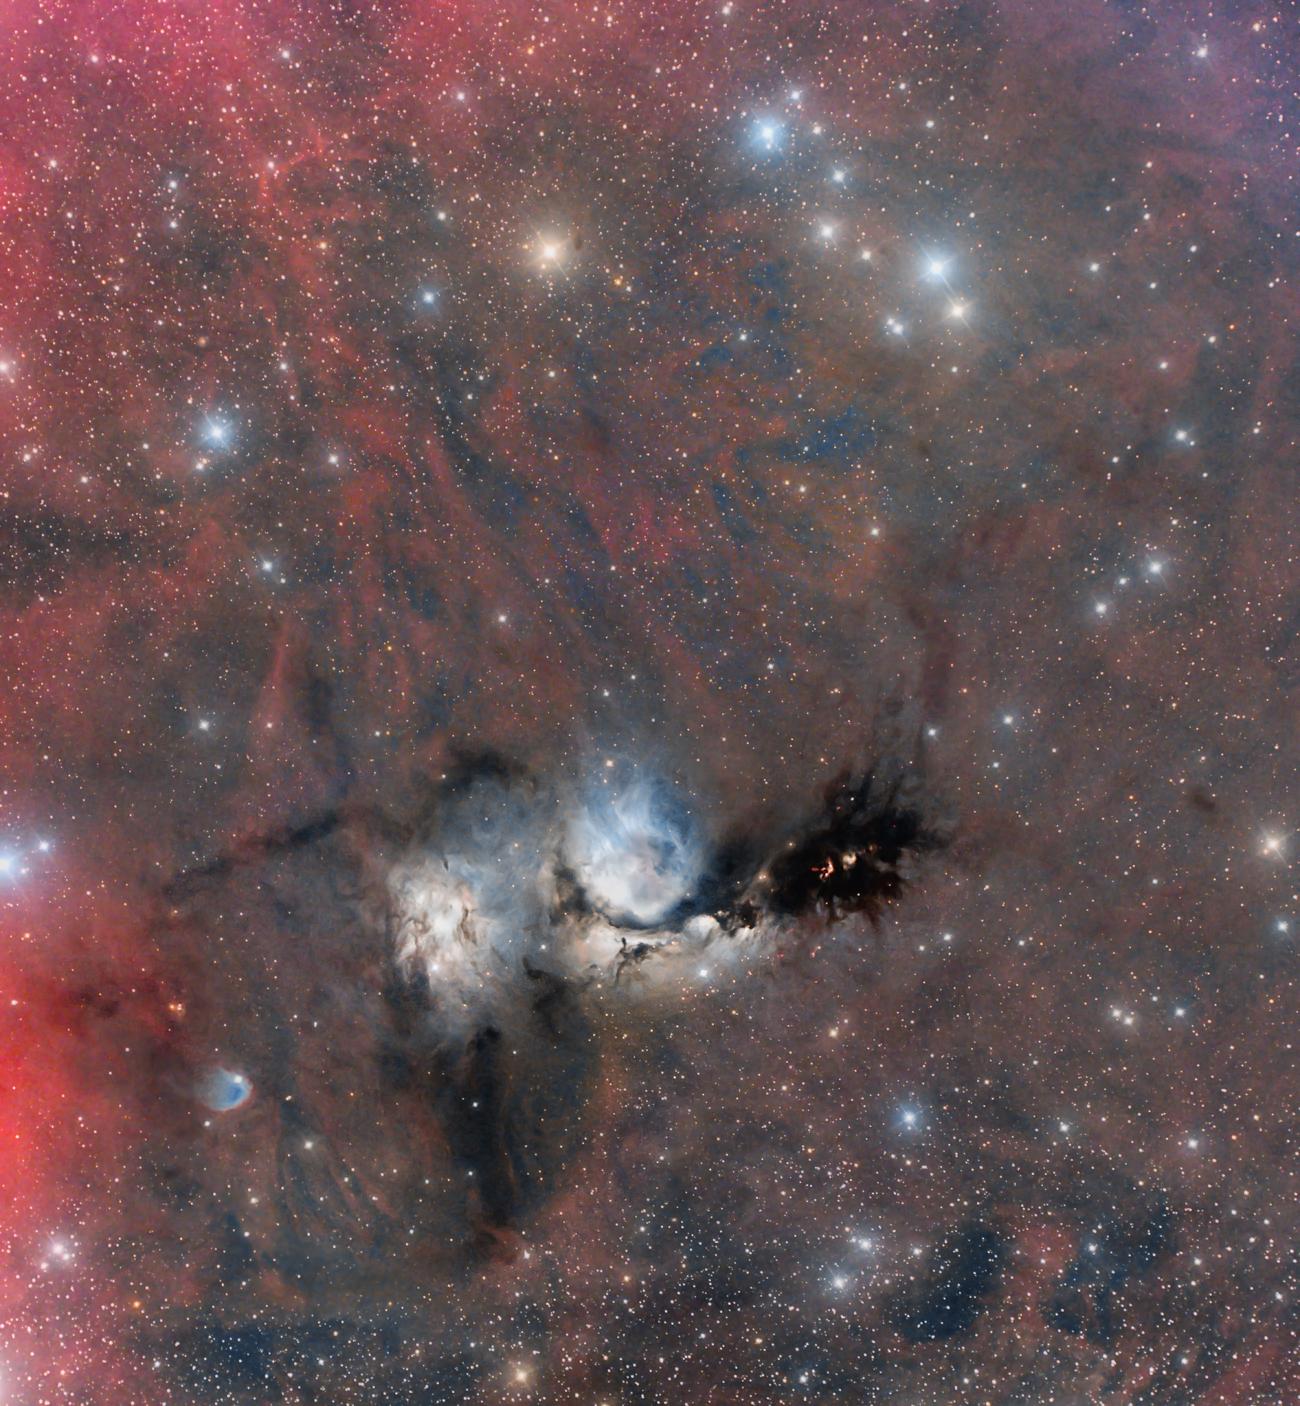 صورة واسعة المجال غنية بالألوان لسديم م78 المزرقّ وعلى يساره تماماً سديم إن‌جي‌سي 2071. تظهر كذلك انبعاثات أجسام هيربگ-هارو والتدفّقات المنبثقة عن النجوم المتشكلة اللتان تقطعان ظلام ممرات الغبار المظلمة، كما يظهر انتشار التوهج المحمر الخافت لغاز الهيدروجين الذري.